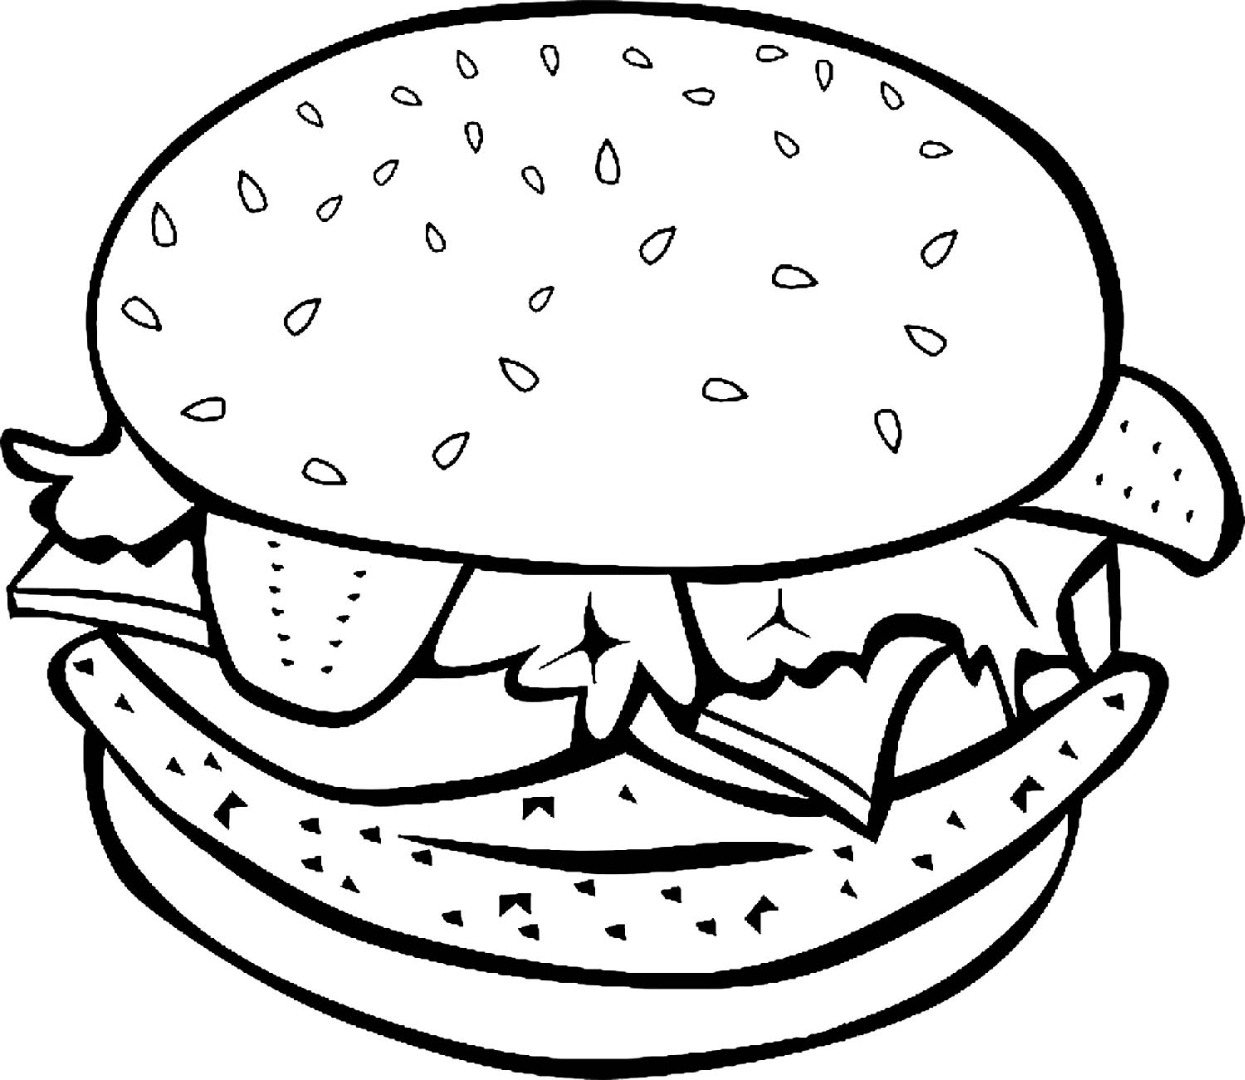 Как нарисовать бутерброд поэтапно 9 уроков